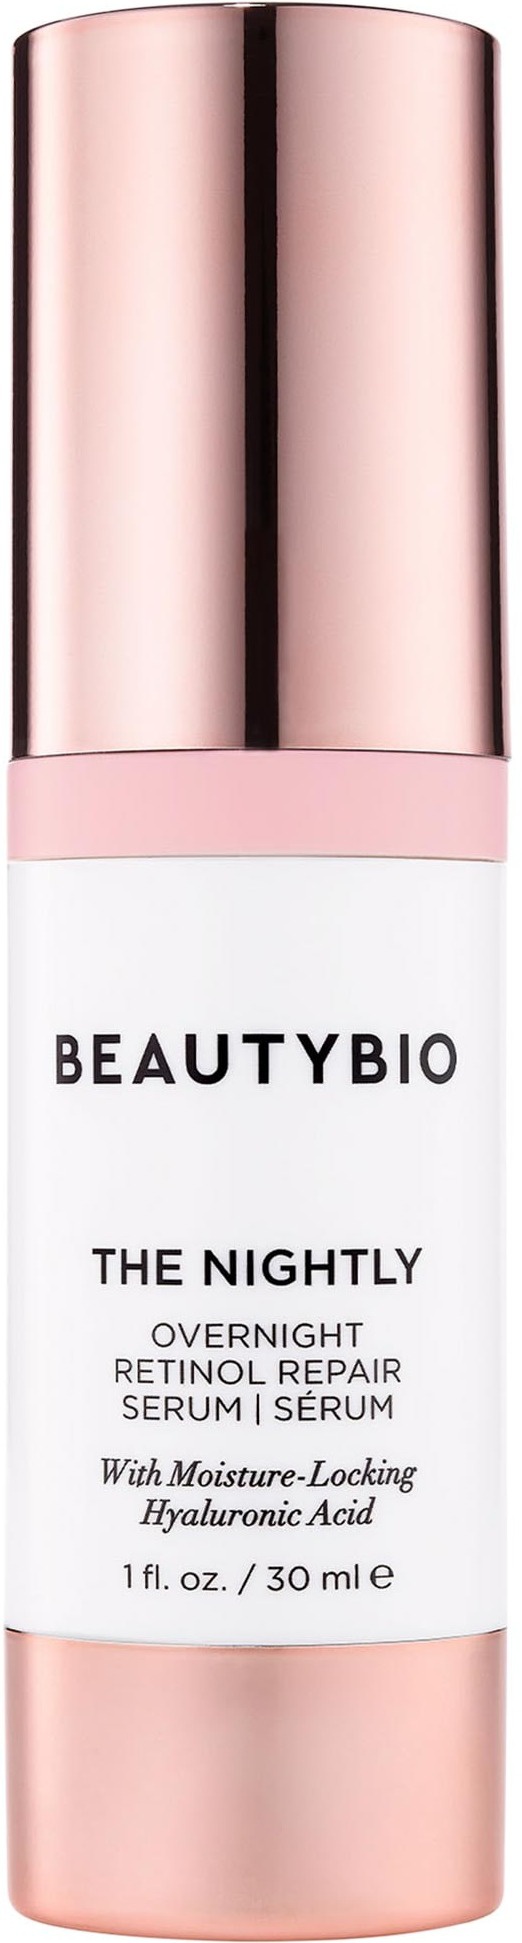 Beautybio The Nightly Retinol + Peptide Anti-aging Serum